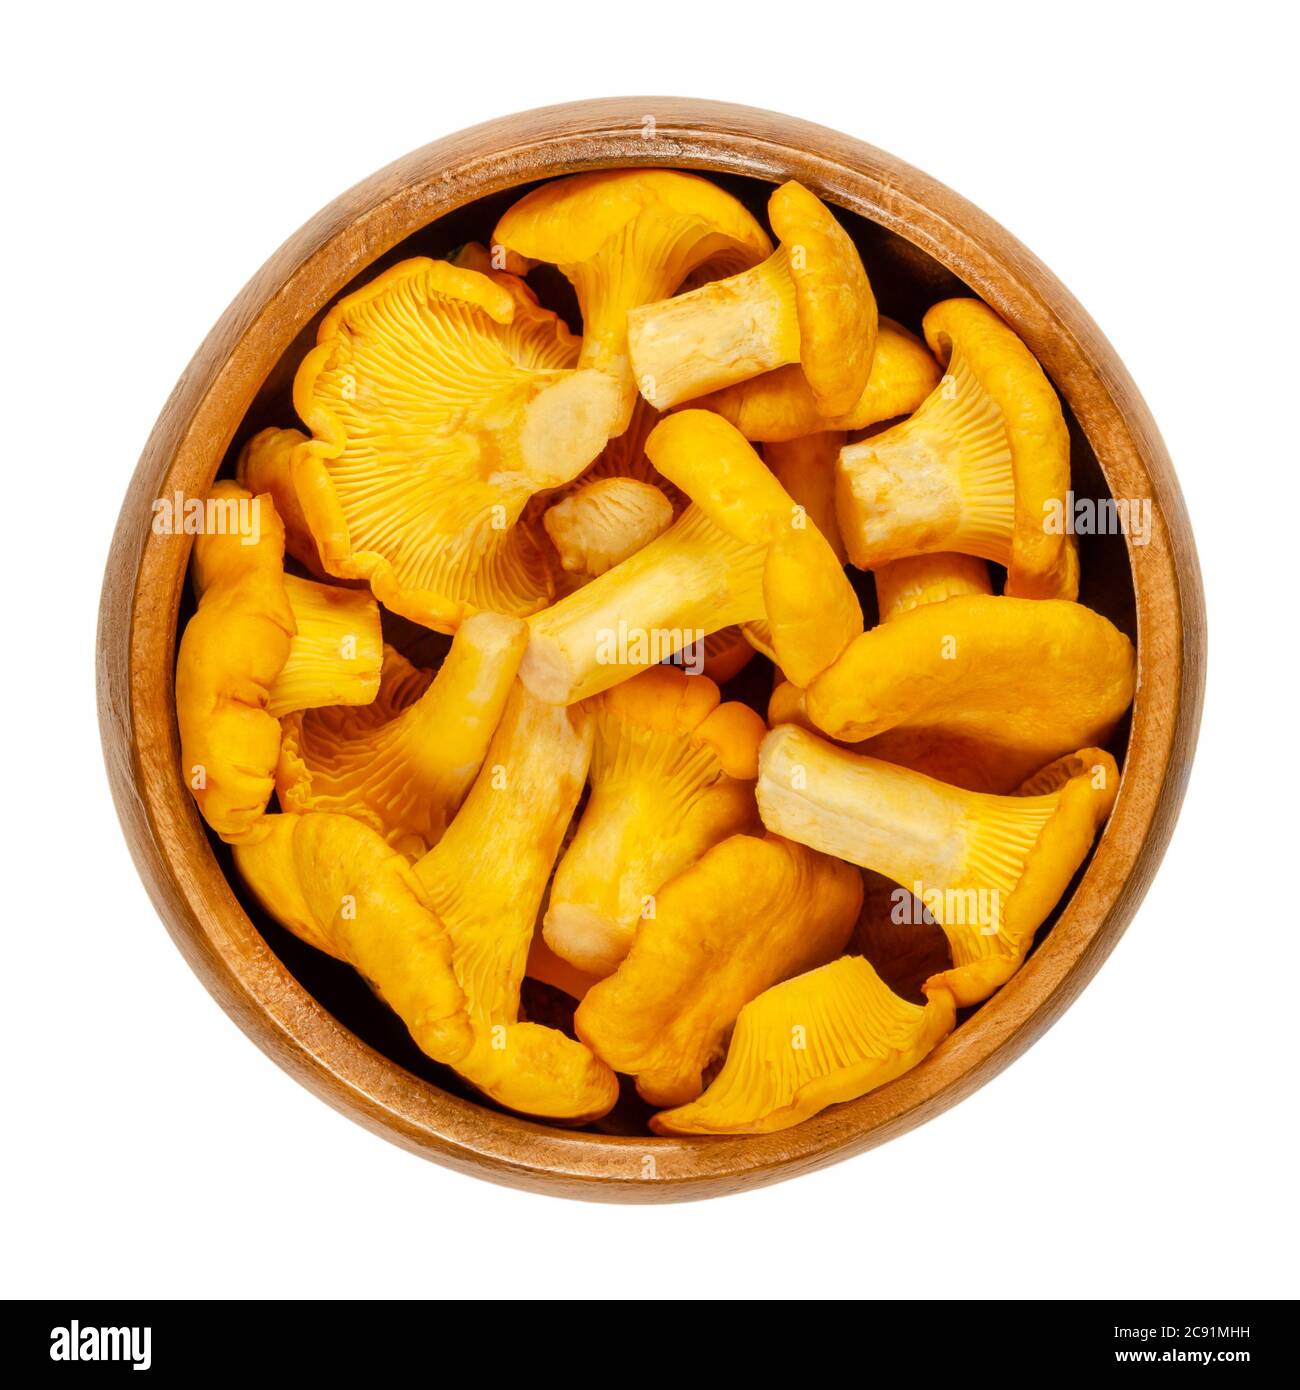 Chanterelles fraîches dans un bol en bois. Cantharellus, champignons comestibles populaires de couleur jaune intense. Un des champignons les plus reconnus et les plus récoltés. Banque D'Images